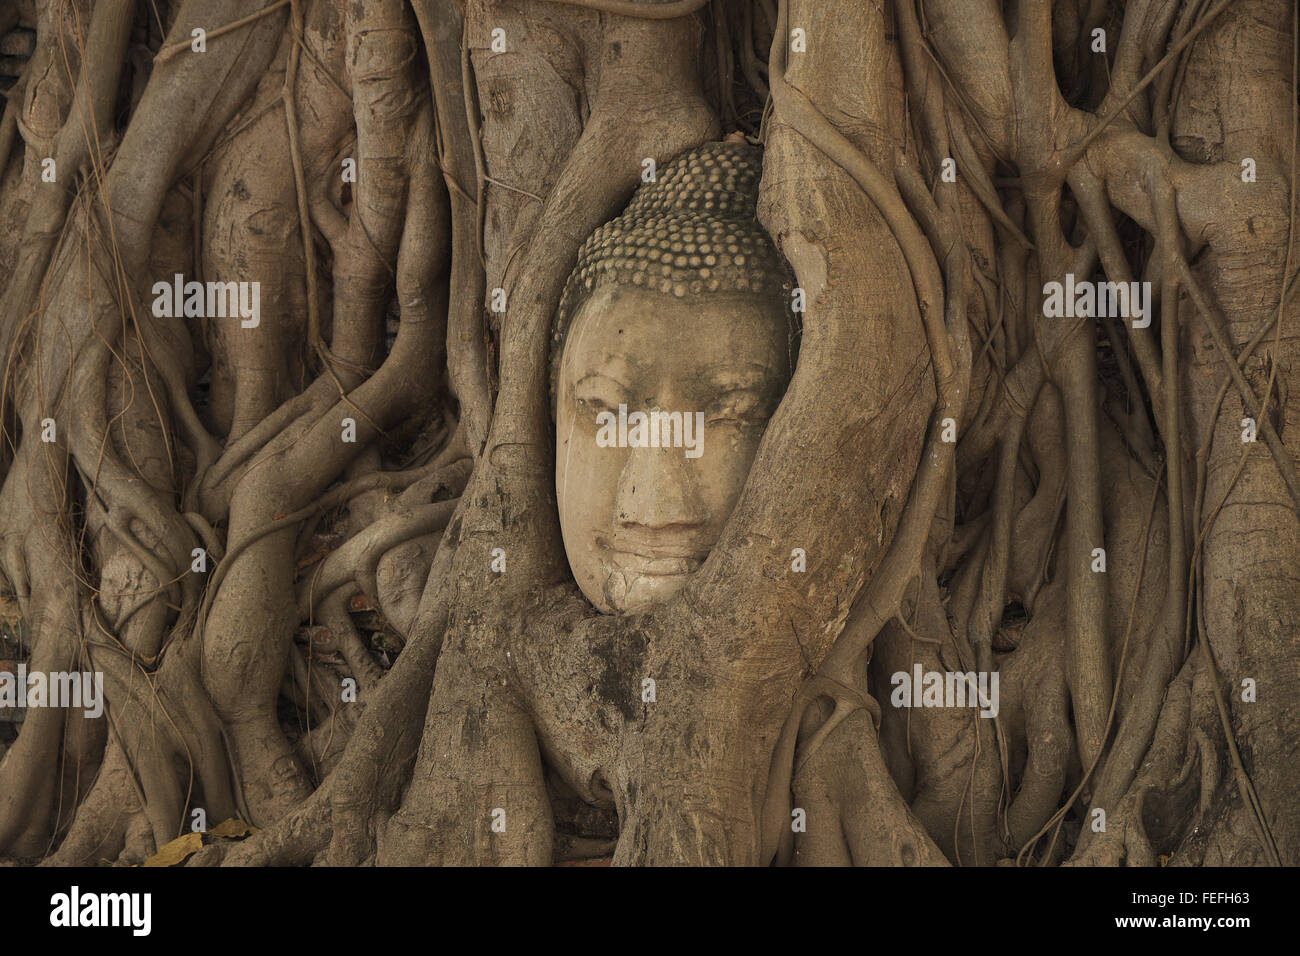 Tête de bouddha emprisonnée dans les racines d'un arbre, Wat Phra Mahathat, Ayutthaya, Thaïlande, Asie. Banque D'Images